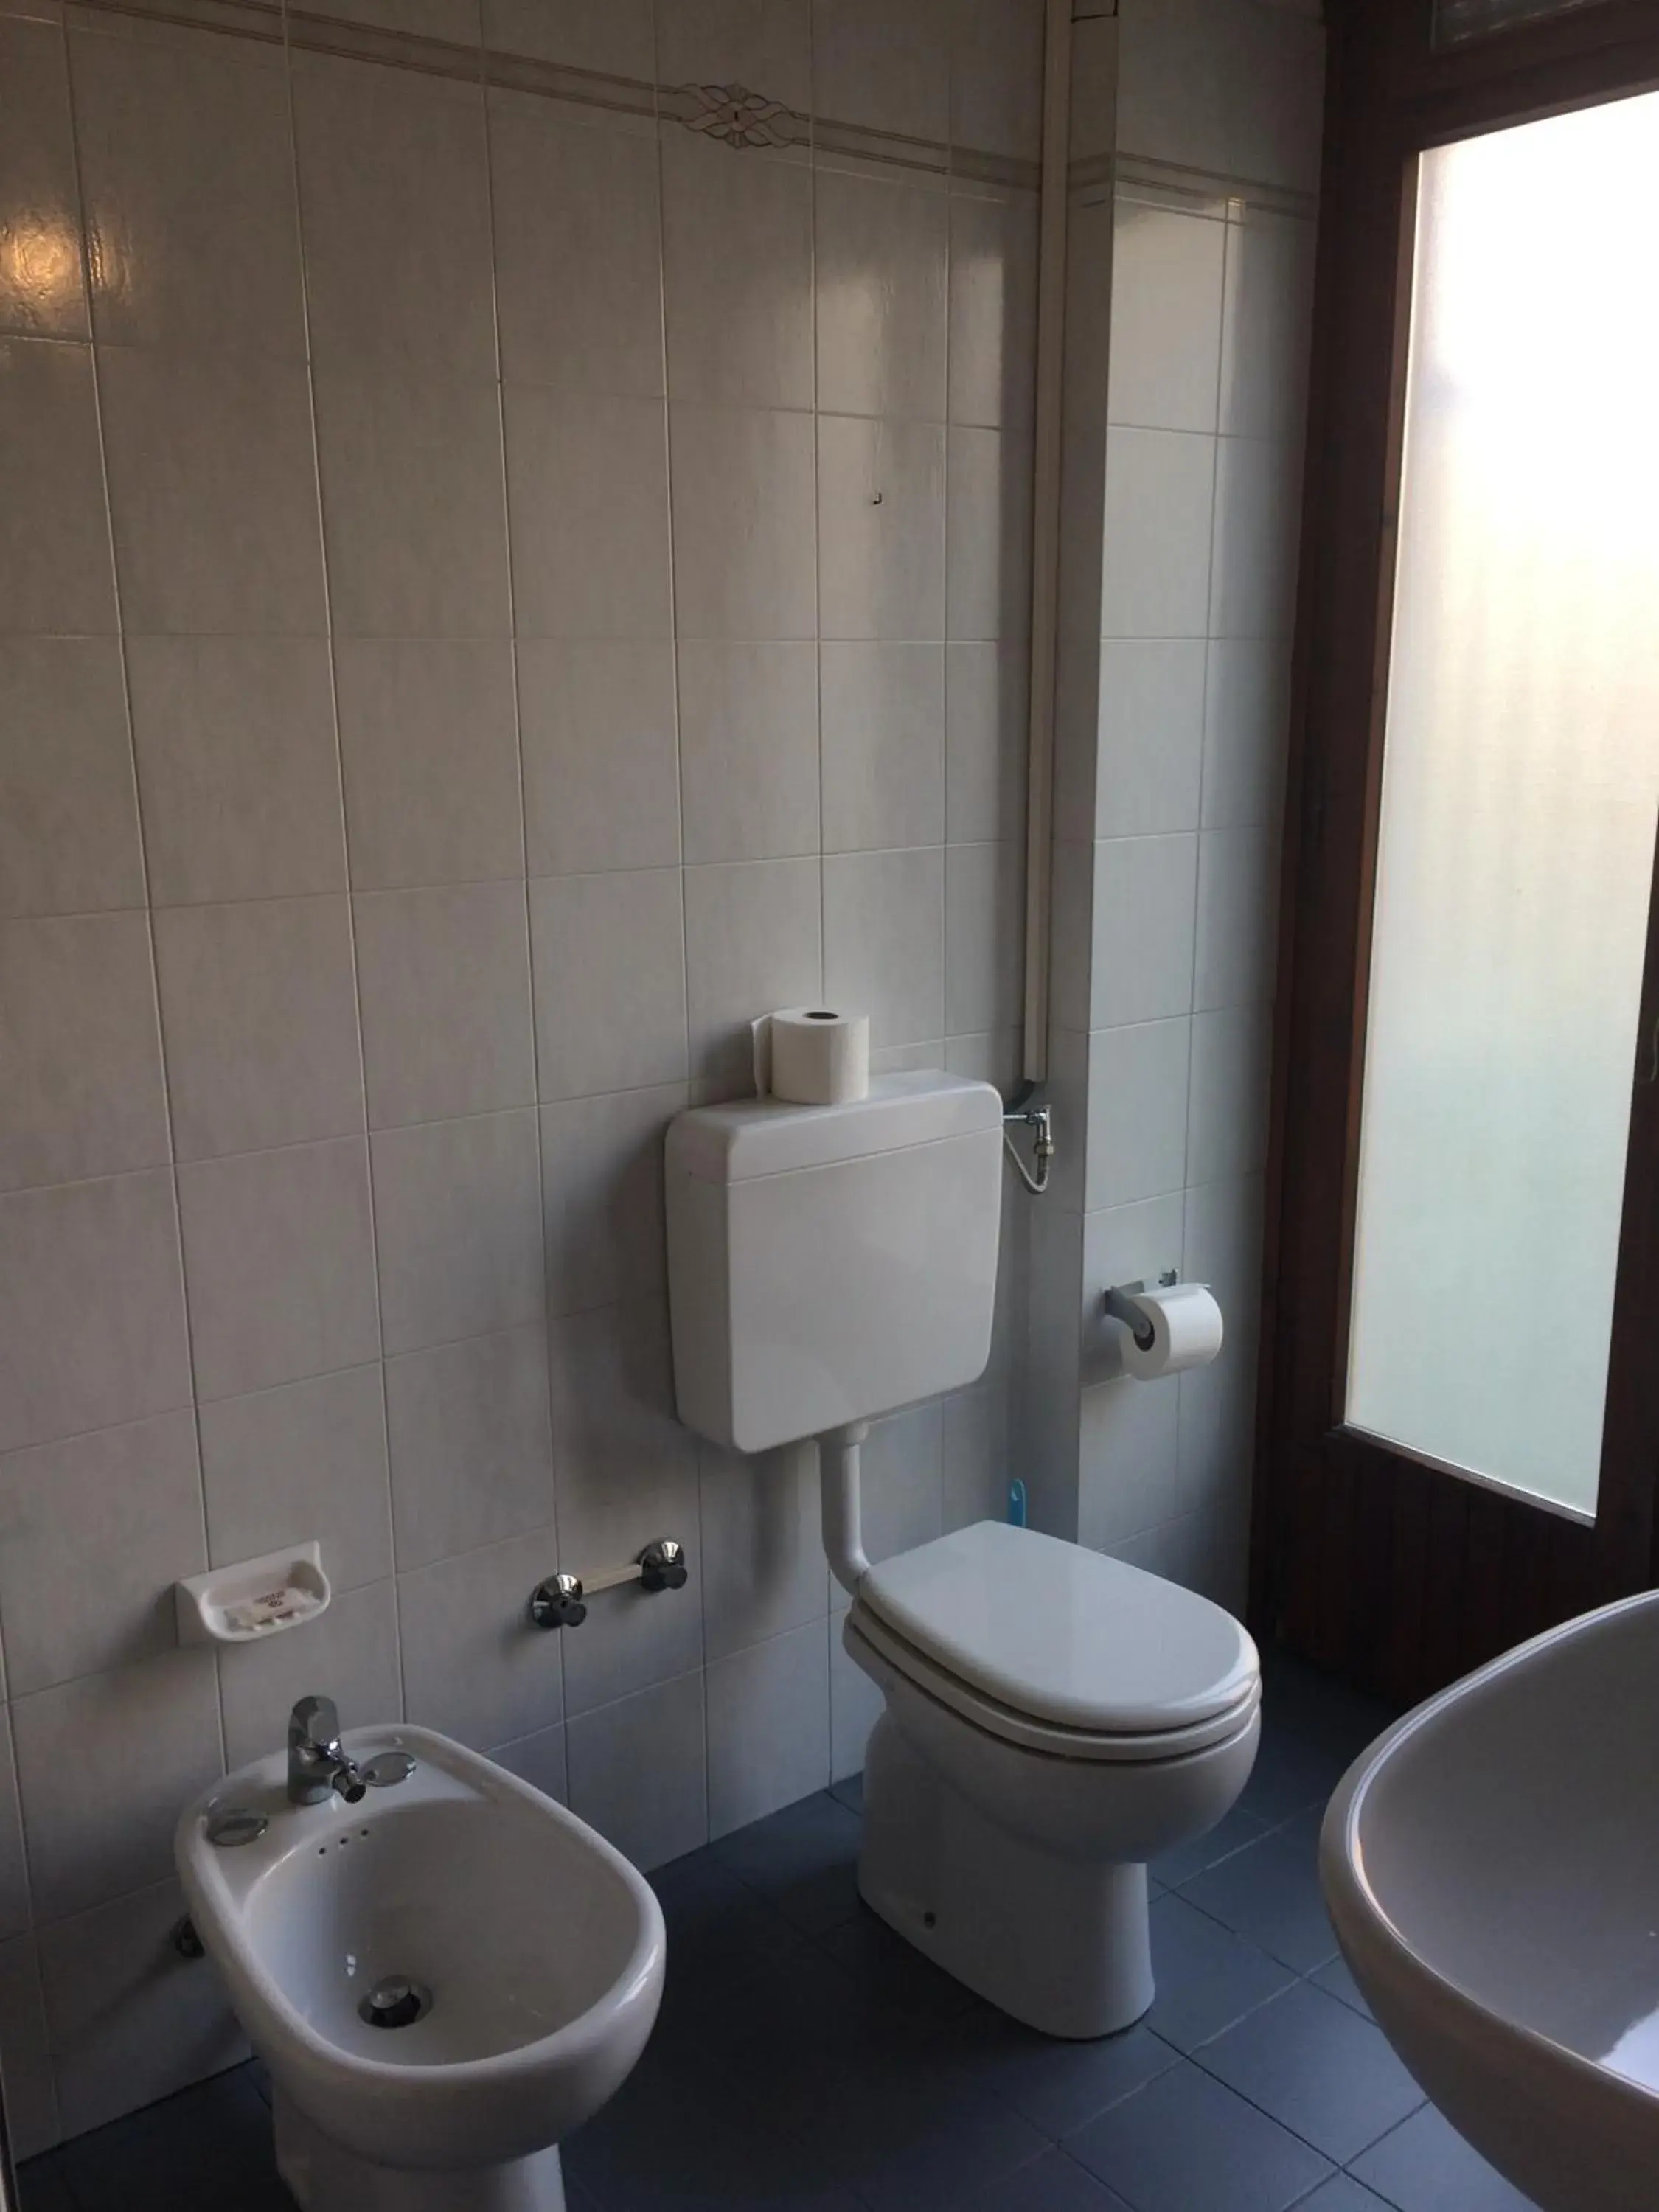 Bathroom in Hotel Bodoni